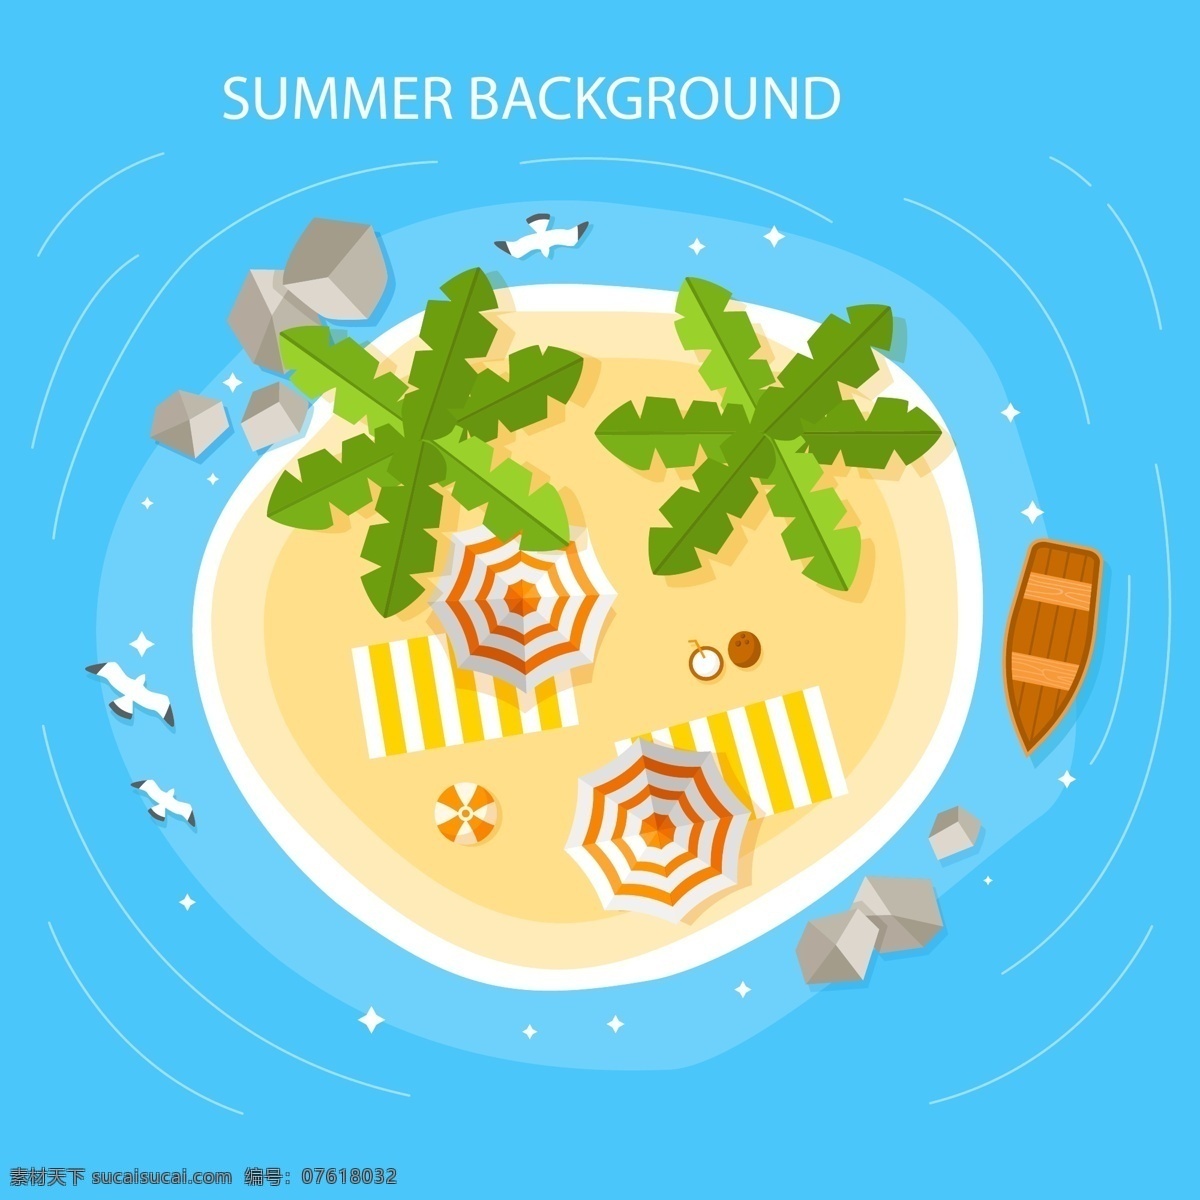 创意 夏季 度假 沙滩 俯视图 矢量 大海 棕榈树 海鸥 船 遮阳伞 石头 礁石 椰汁 动漫动画 风景漫画